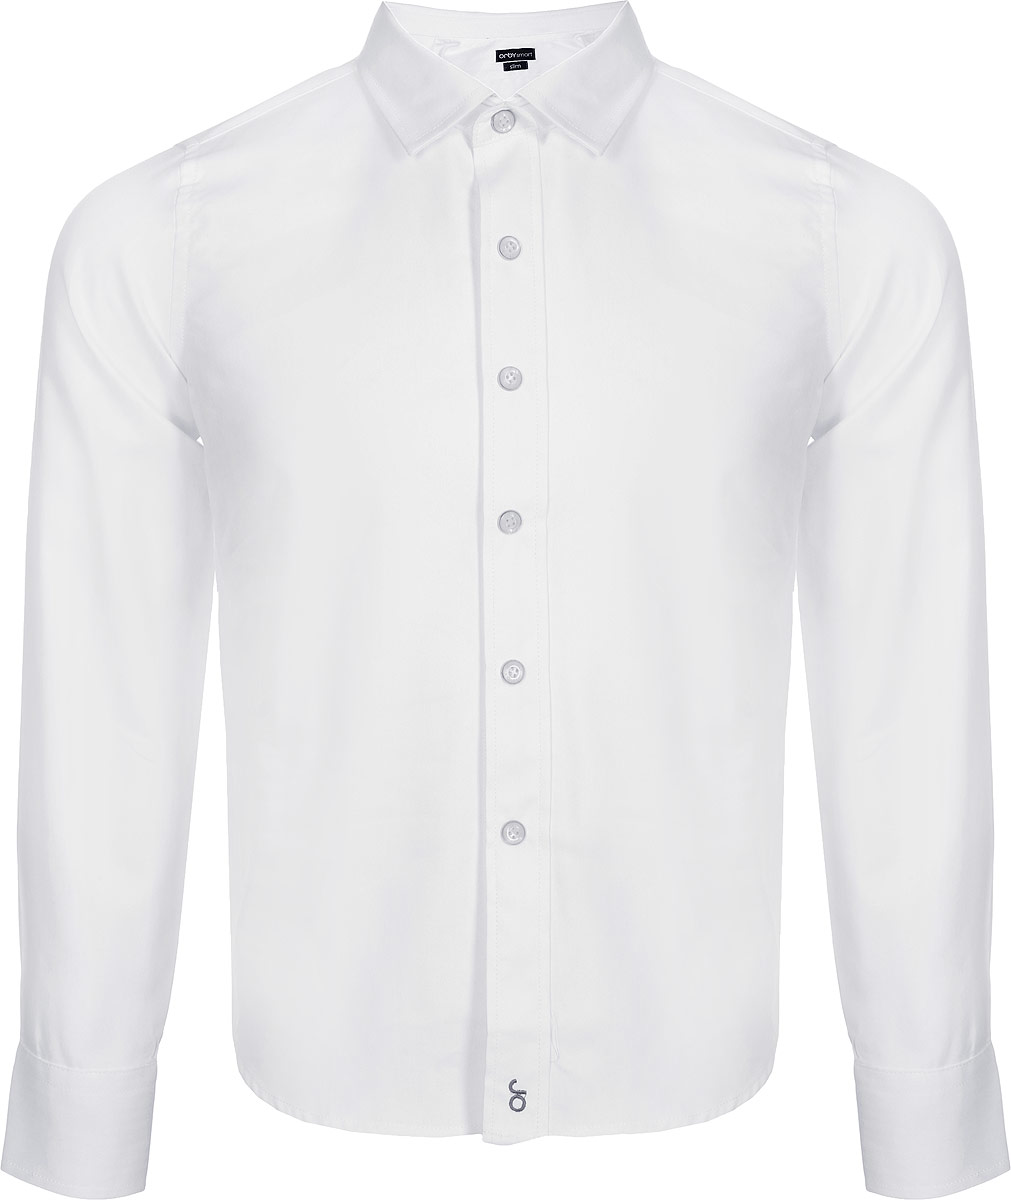 Рубашка для мальчика Orby, цвет: белый. 80452_OLB. Размер 146